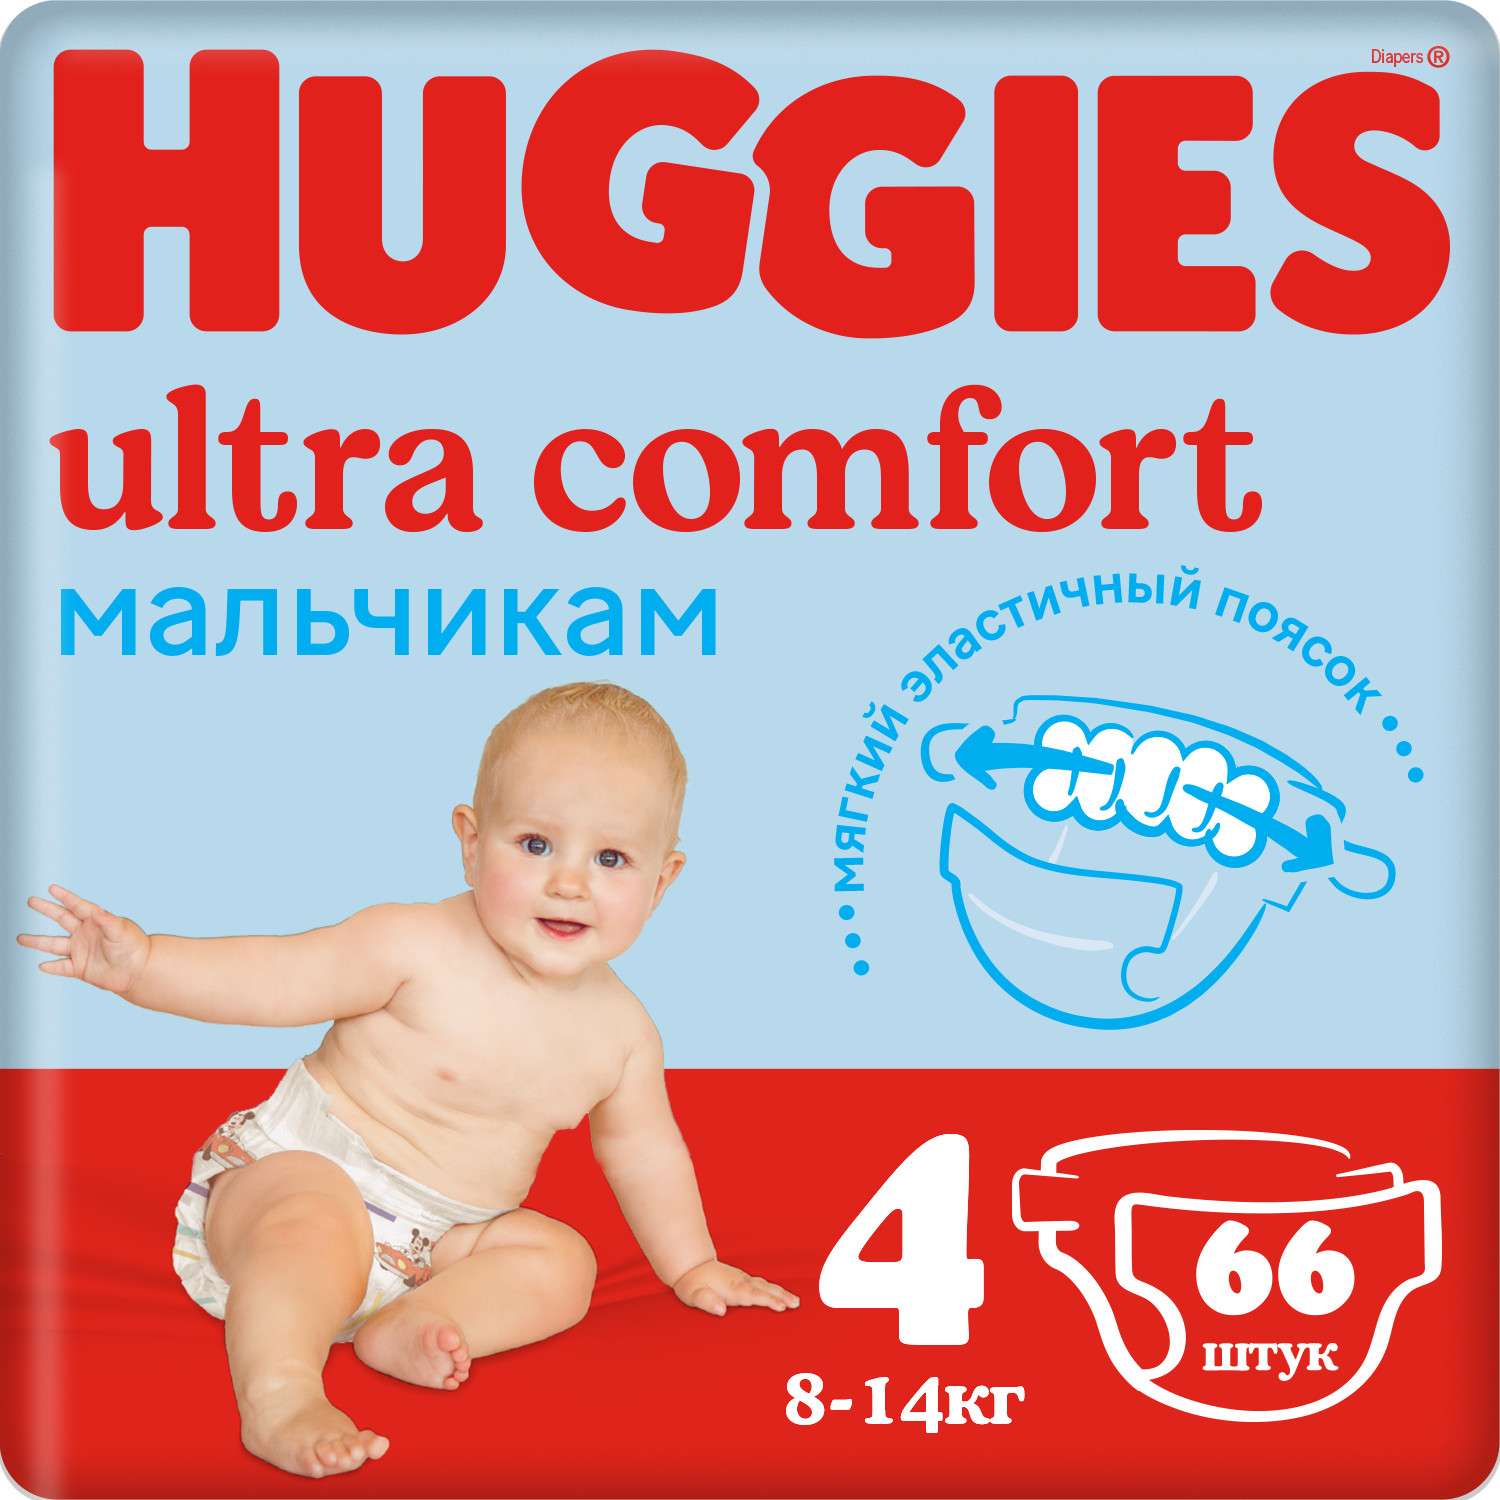 Подгузники для мальчиков Huggies Ultra Comfort 4 8-14кг 66шт - фото 1